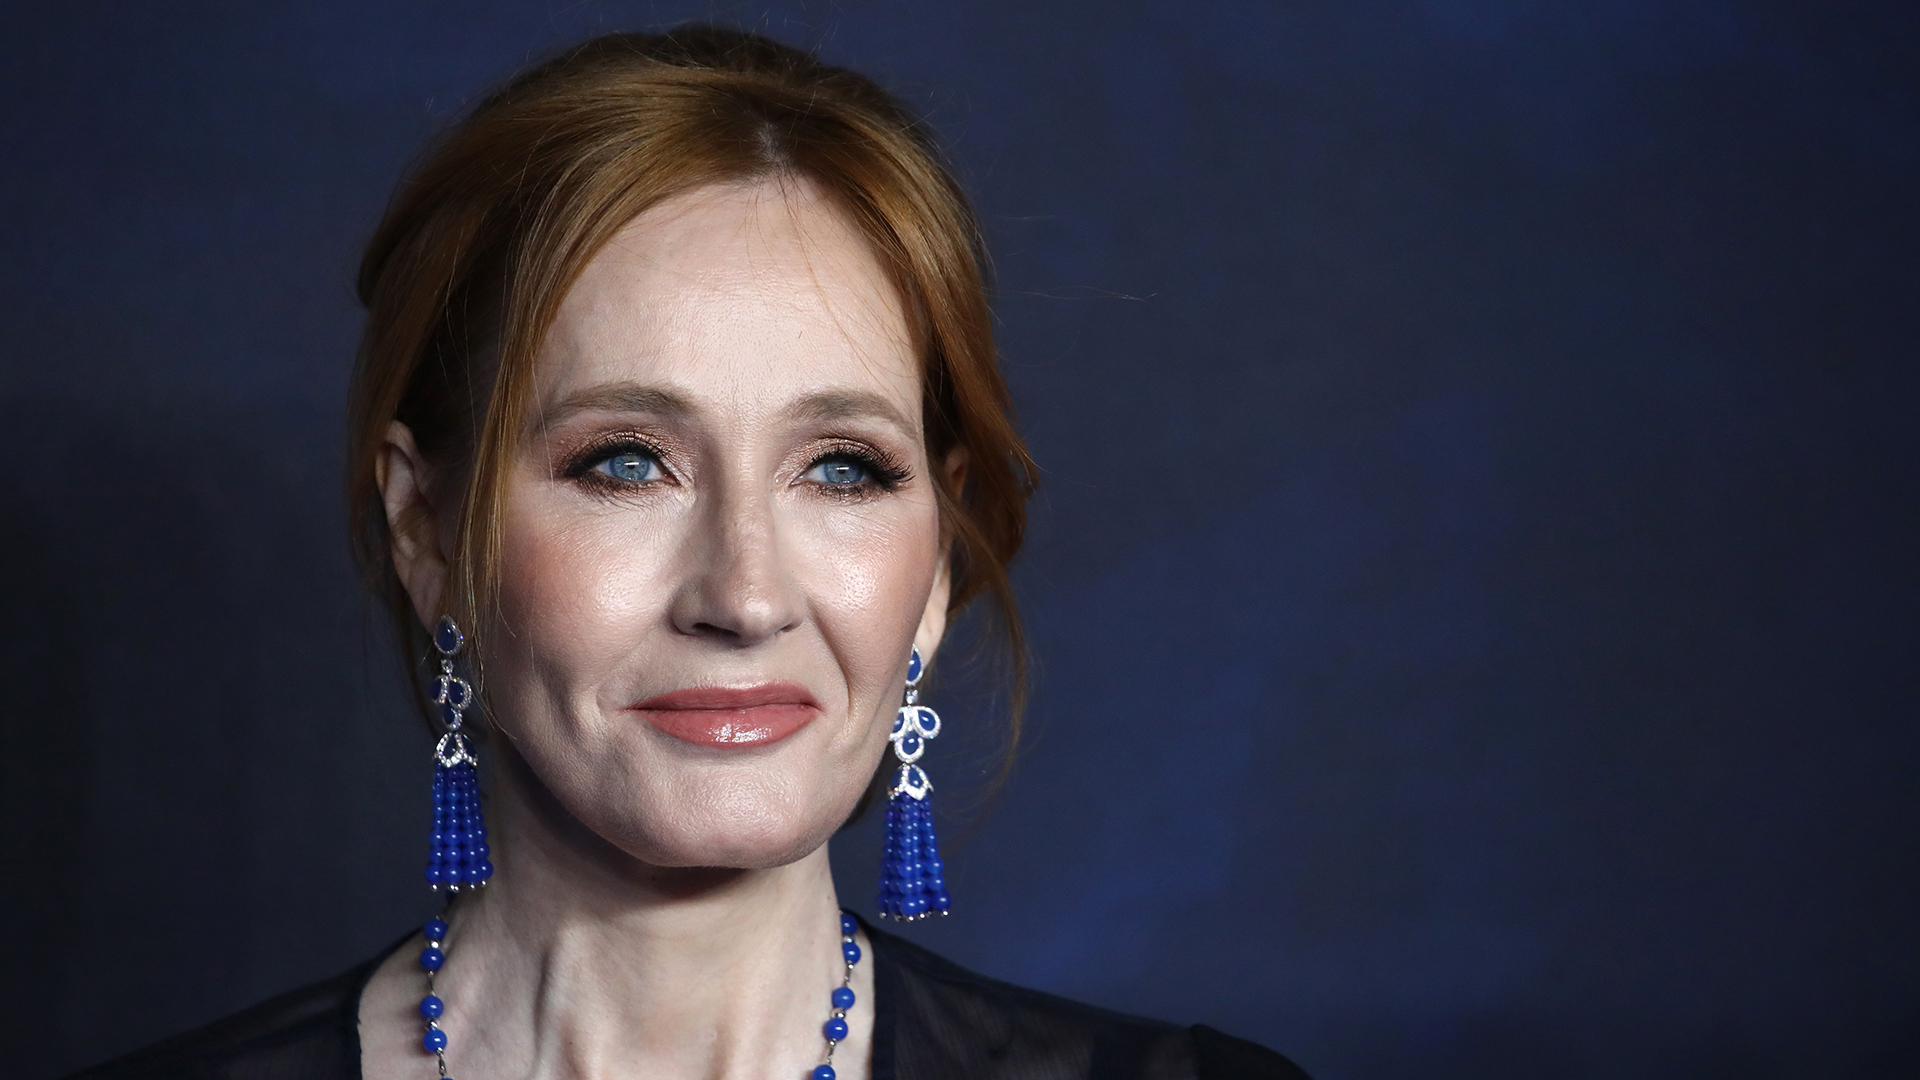 La escritora JK Rowling fue criticado por comentarios transfóbicos (Photo by John Phillips/Getty Images)